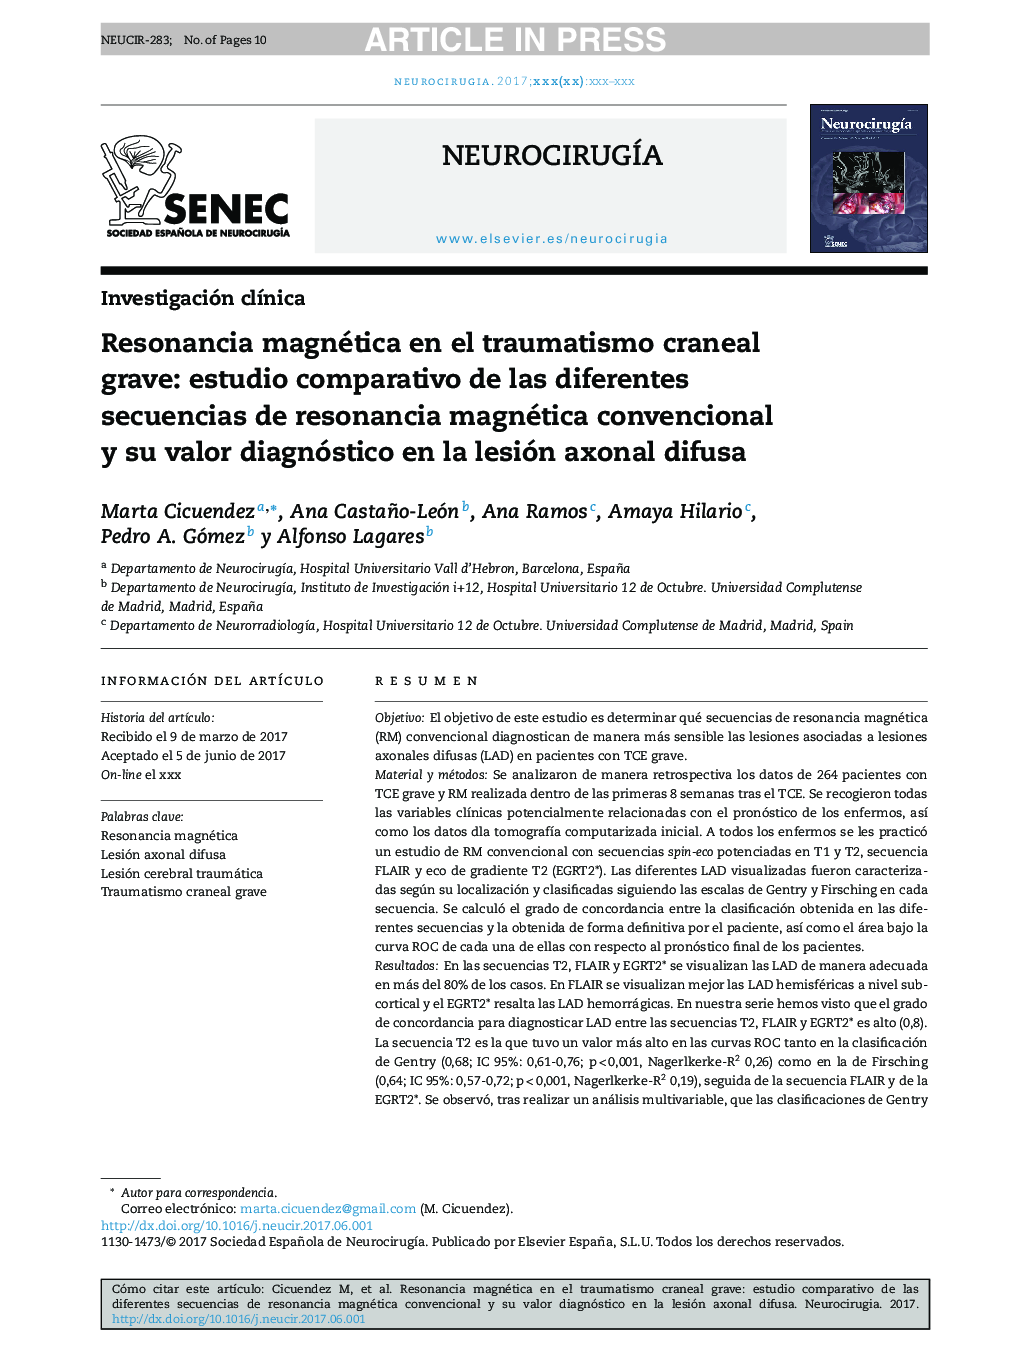 Resonancia magnética en el traumatismo craneal grave: estudio comparativo de las diferentes secuencias de resonancia magnética convencional y su valor diagnóstico en la lesión axonal difusa